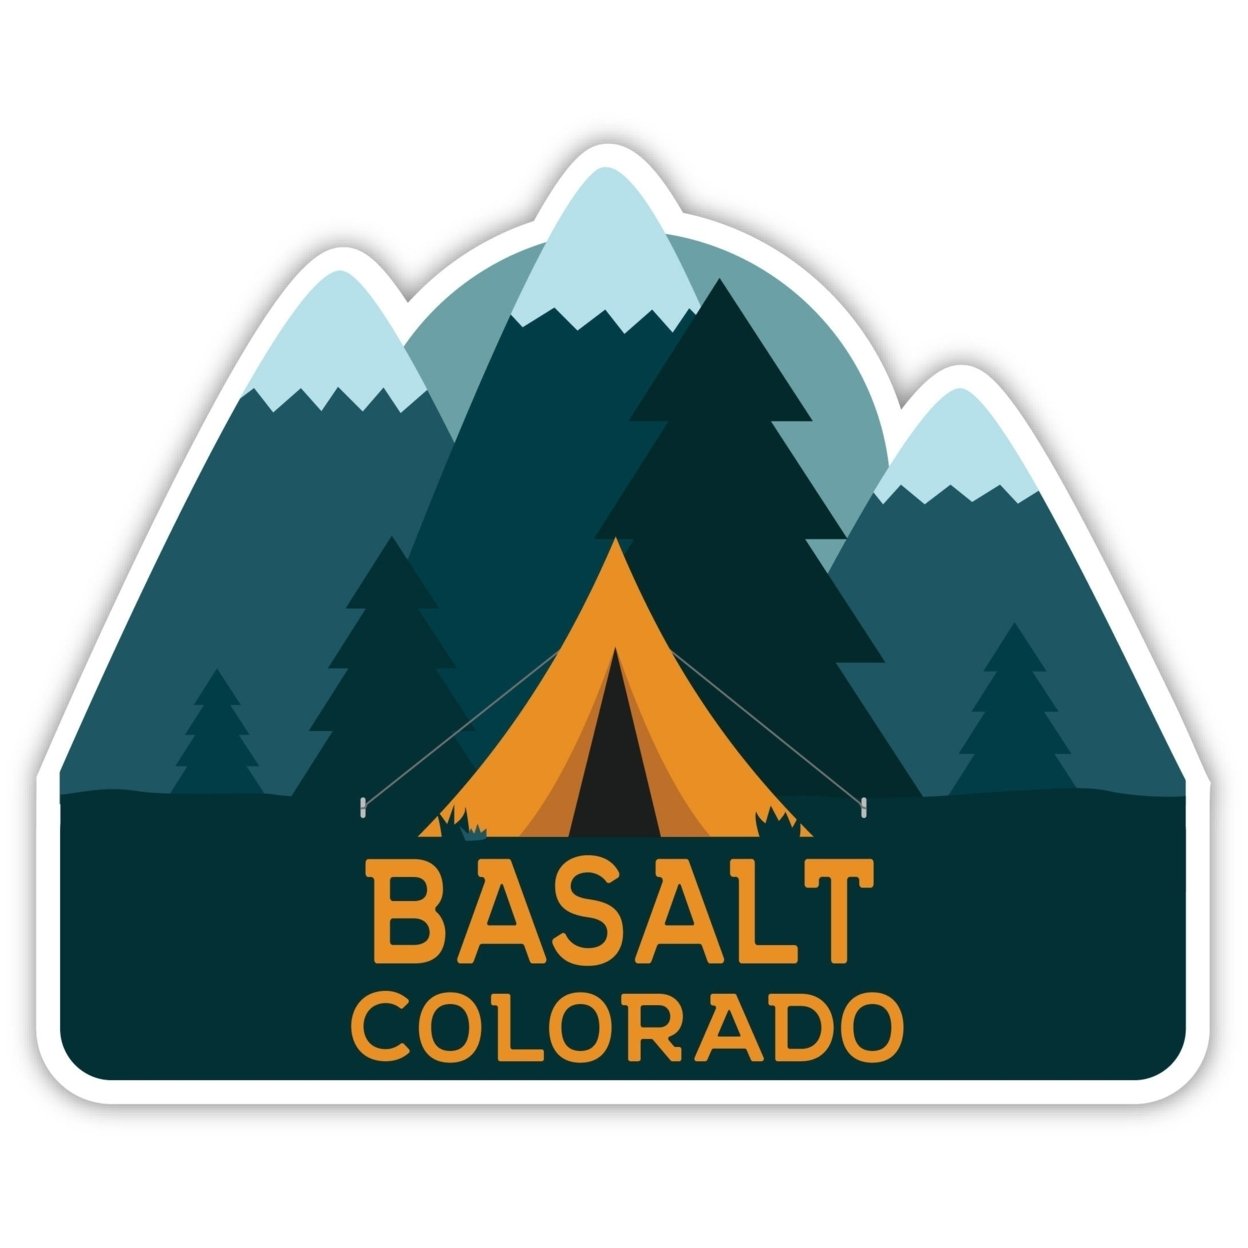 Basalt Colorado Souvenir Decorative Stickers (Choose Theme And Size) - Single Unit, 6-Inch, Tent